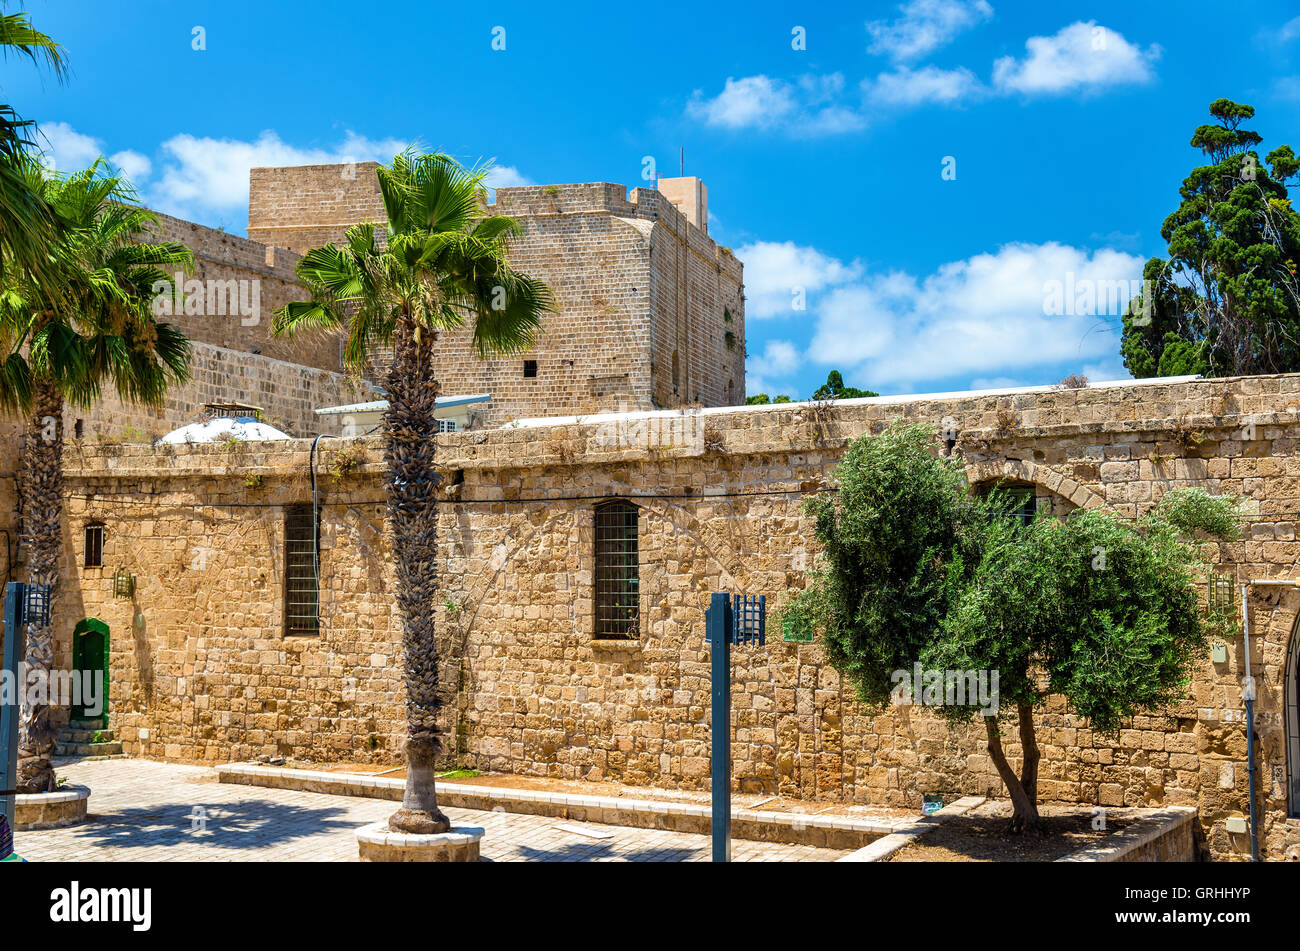 Citadelle de Acre, une fortification ottomane en Israël Banque D'Images